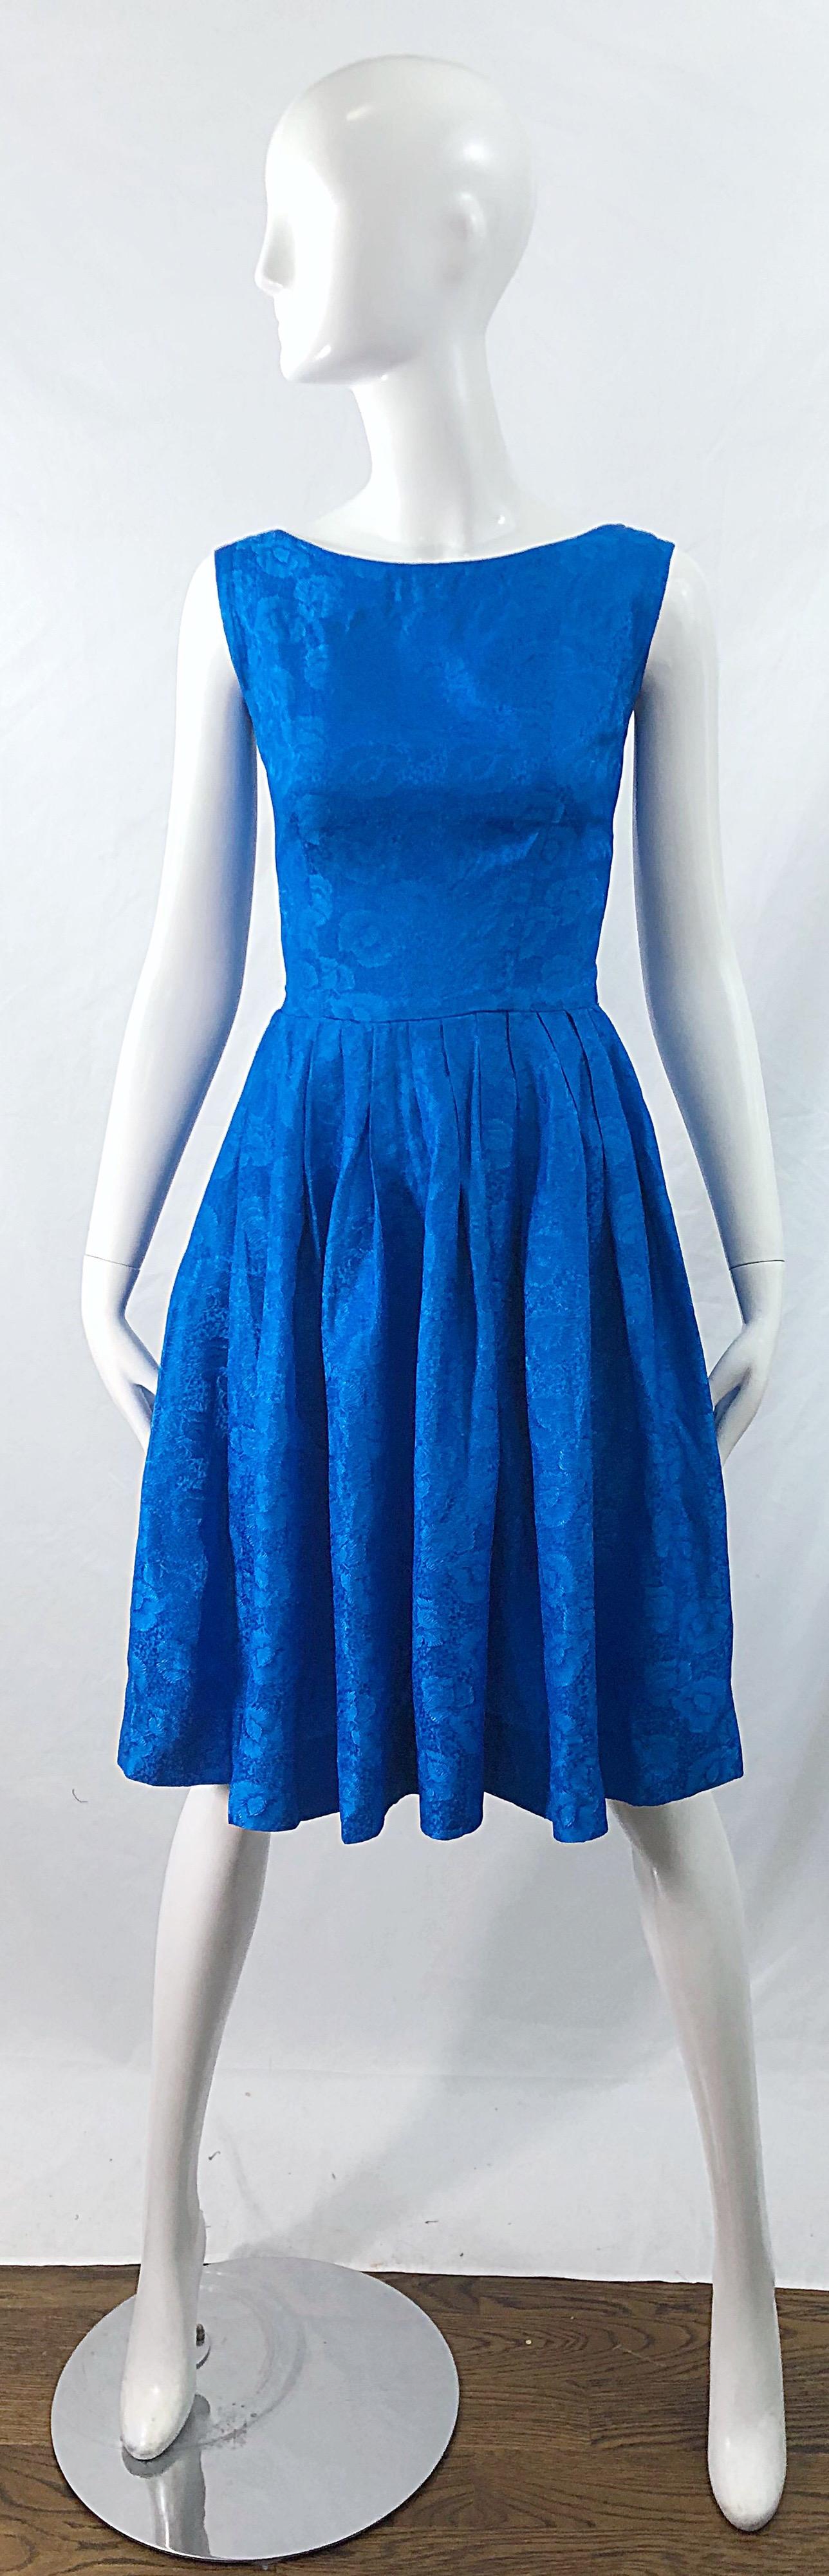 Schönes 1950er Jahre Größe 0 kobaltblau Seidendamast fit n' flare ärmelloses Rockabilly Kleid ! Mit maßgeschneidertem Mieder und vollem Rock. Durchgehender Metallreißverschluss auf der Rückseite mit Haken- und Ösenverschluss. Der Rock bietet viel